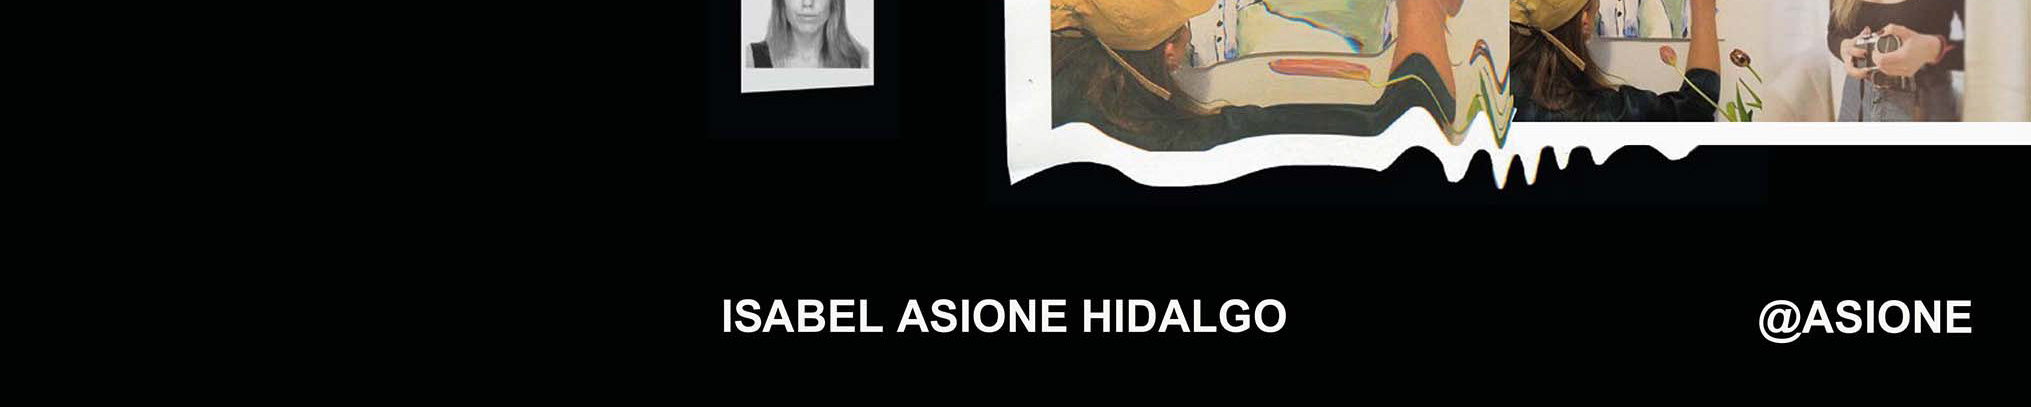 Profil-Banner von Isabel asione Hidalgo